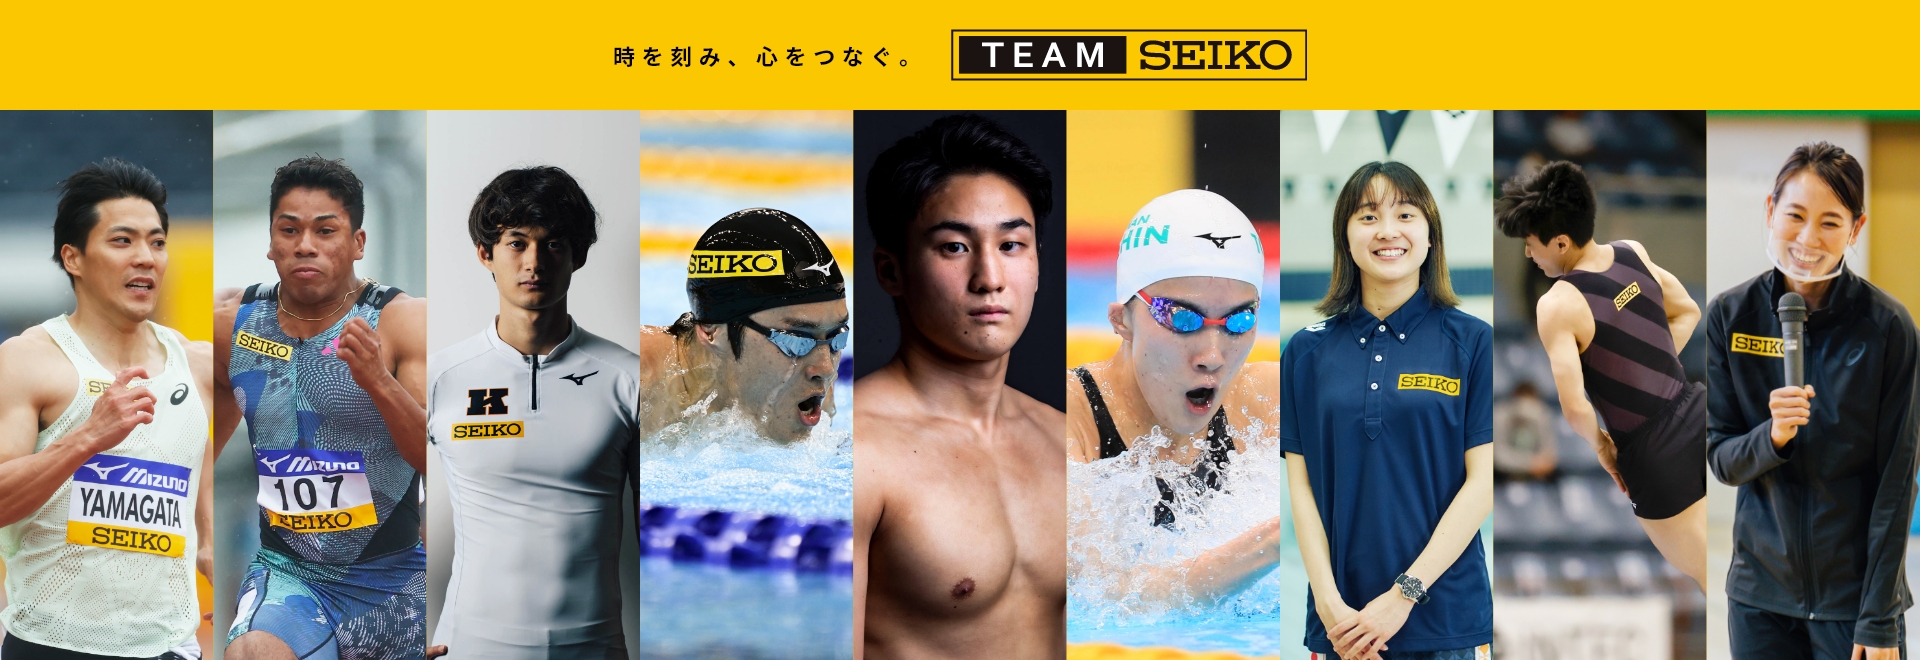 時を刻み、心をつなぐ。team seiko